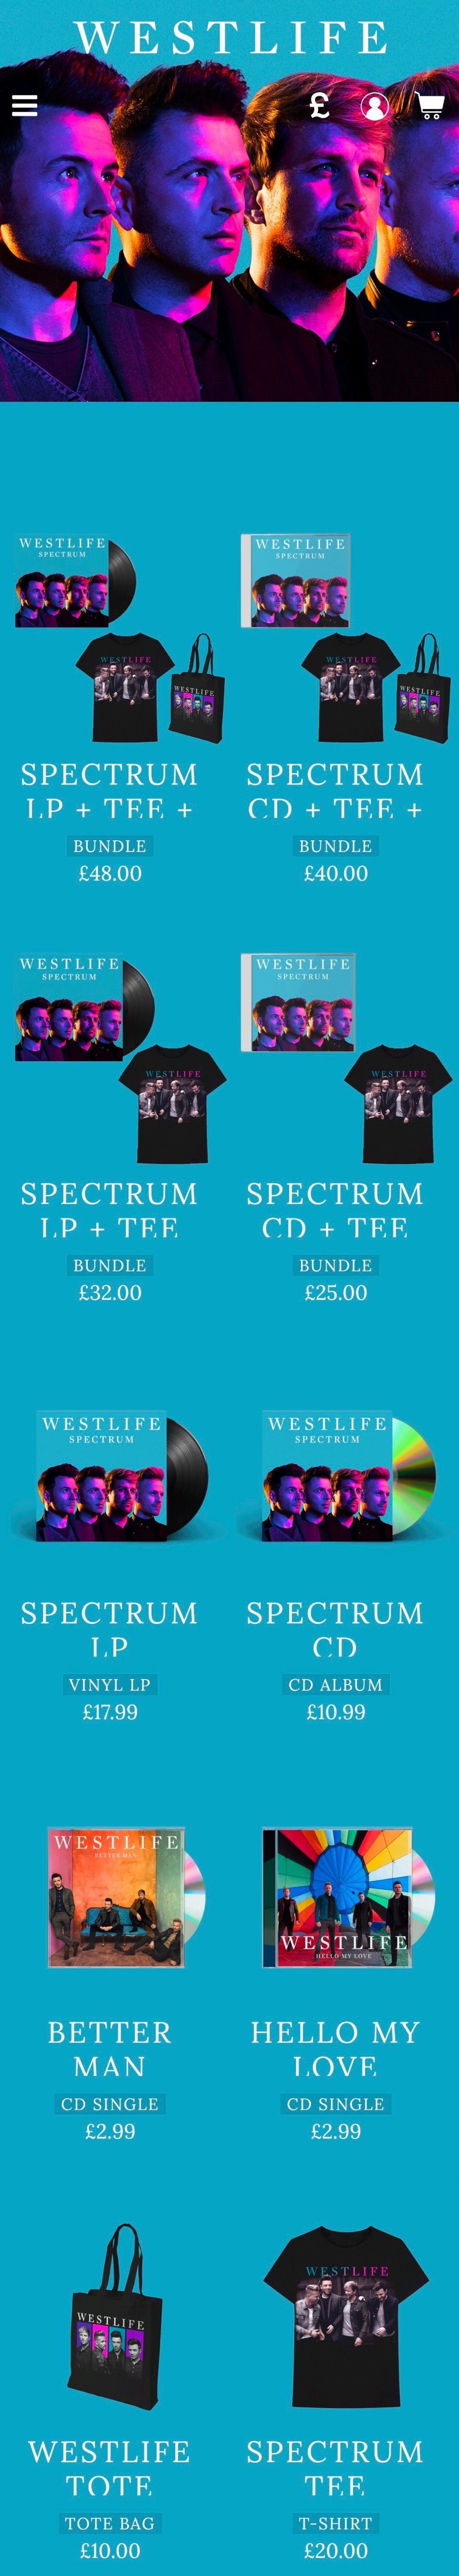 Westlife新专辑Spectrum四版本亮相